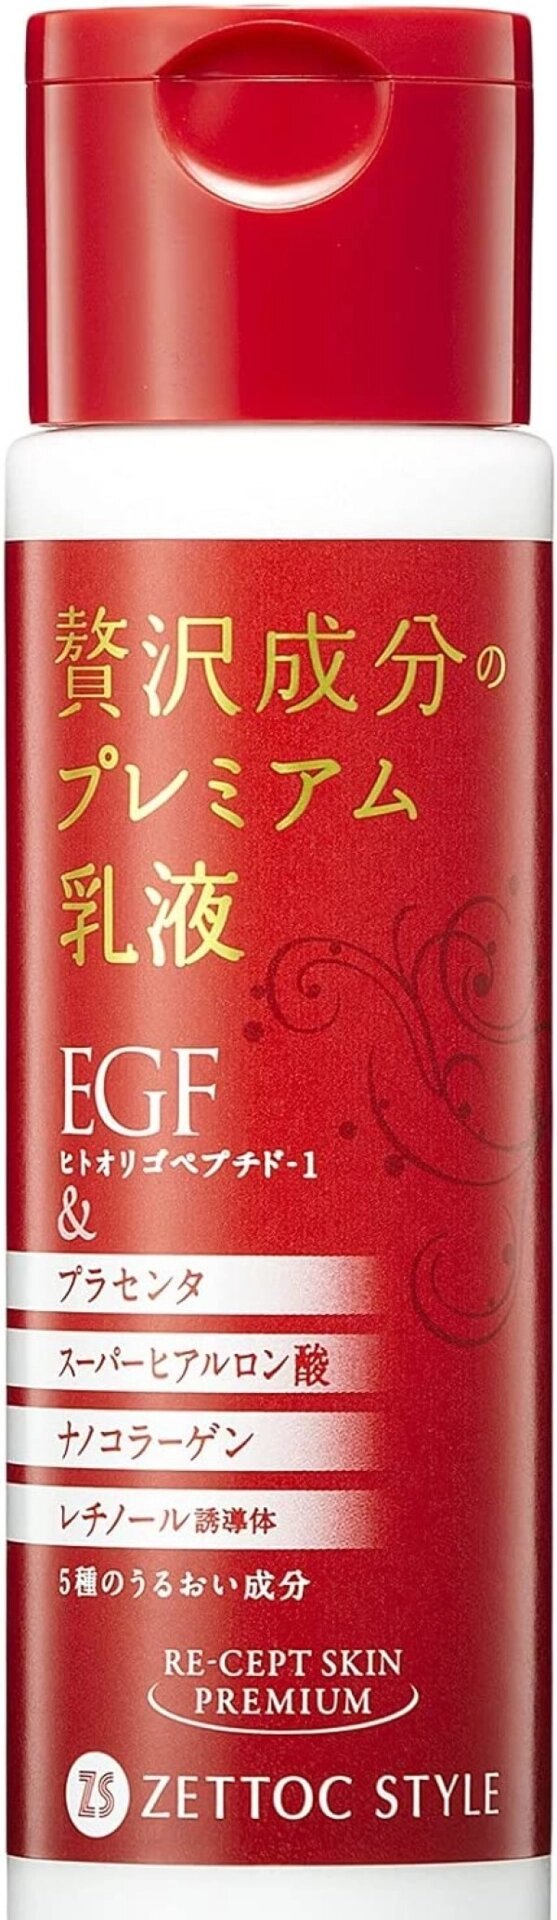 Премиальная антивозрастная эмульсия с EGF для борьбы с морщинами Zetok Style Recept Skin Premium Emulsion, 140 мл Япония от компании Ginza Street | Японские витамины и косметика - фото 1